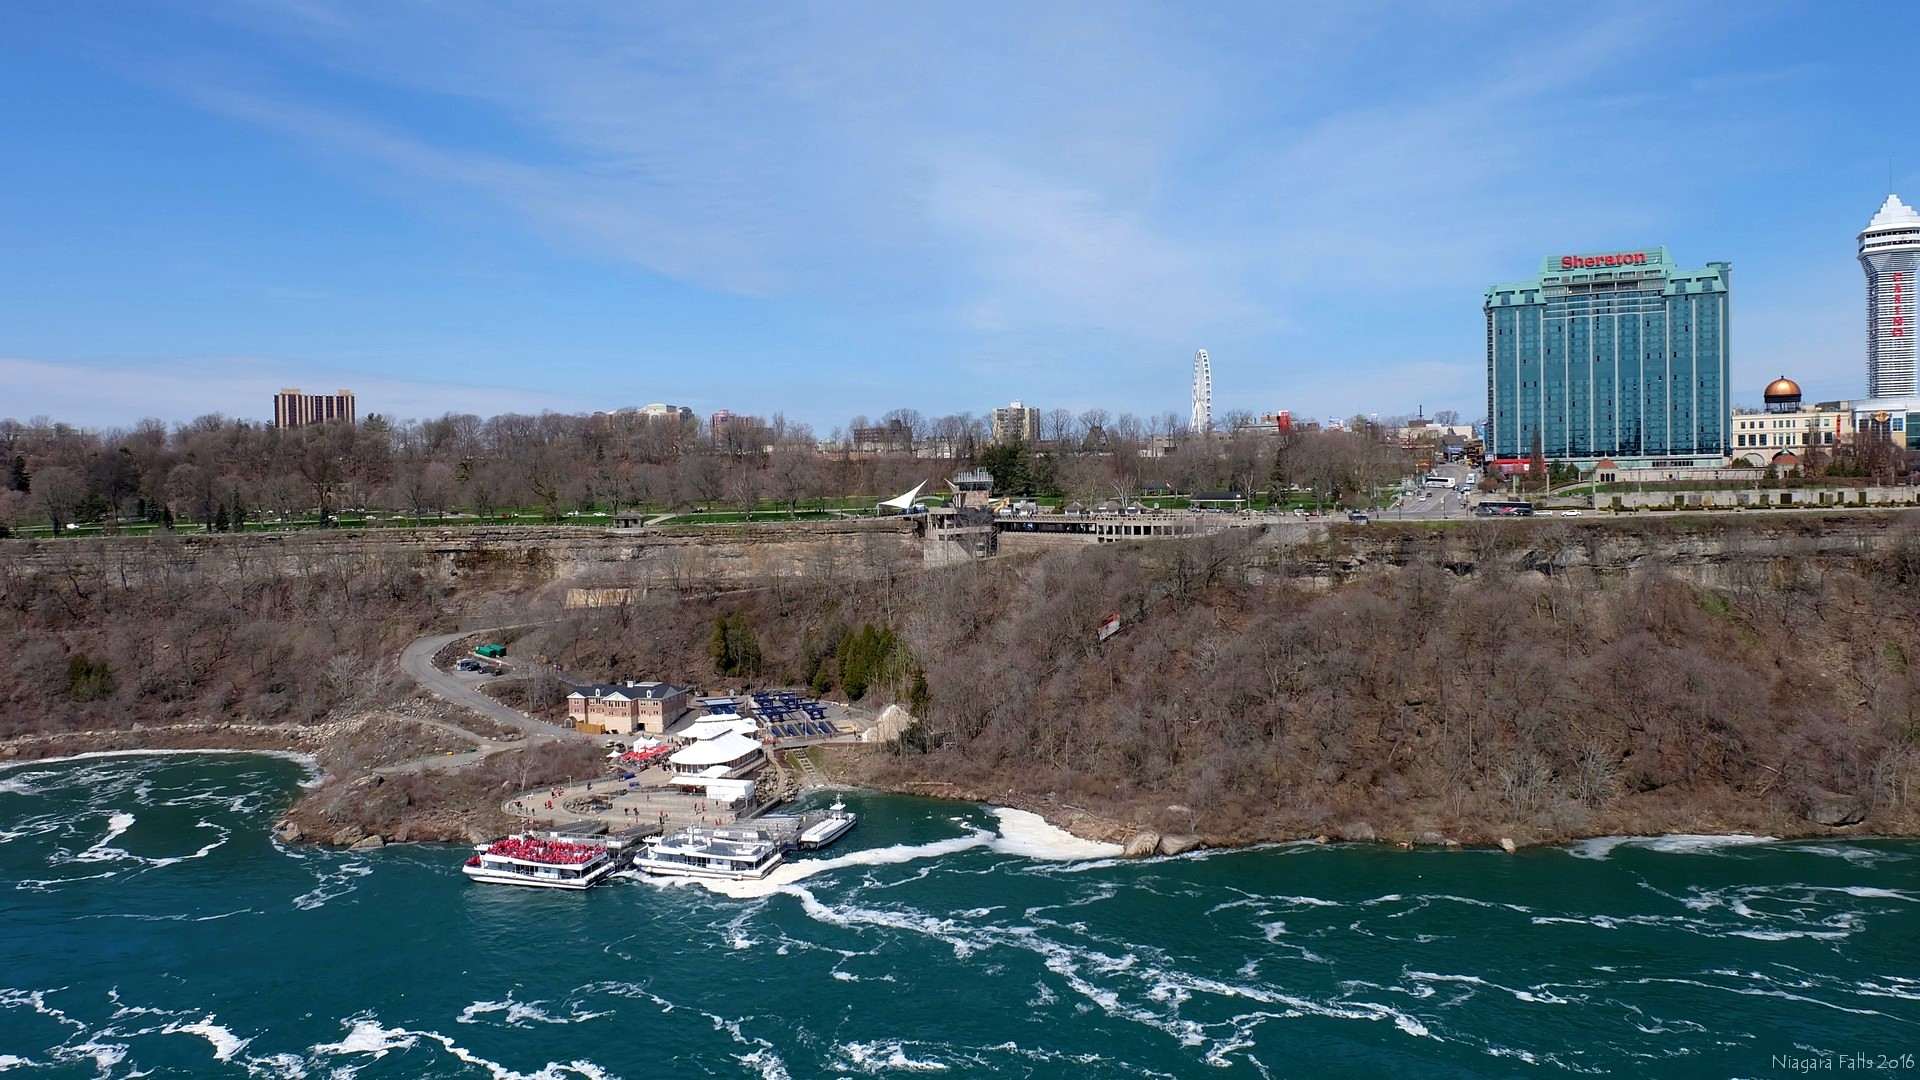 Niagara Falls, NY, USA